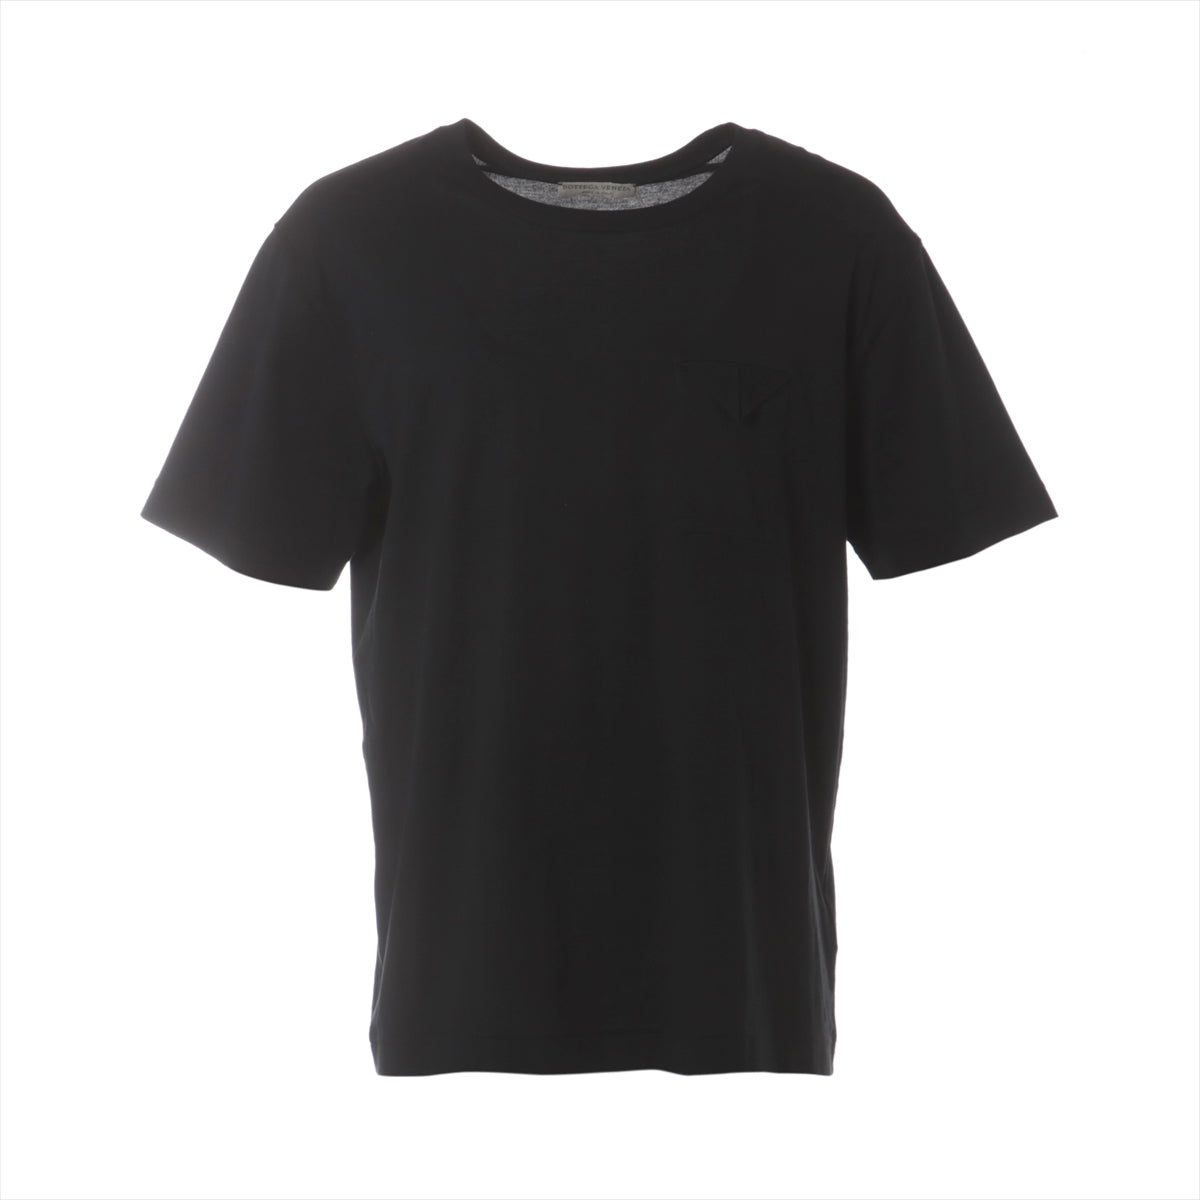 ボッテガヴェネタ 19年 コットン Tシャツ 50 メンズ ブラック